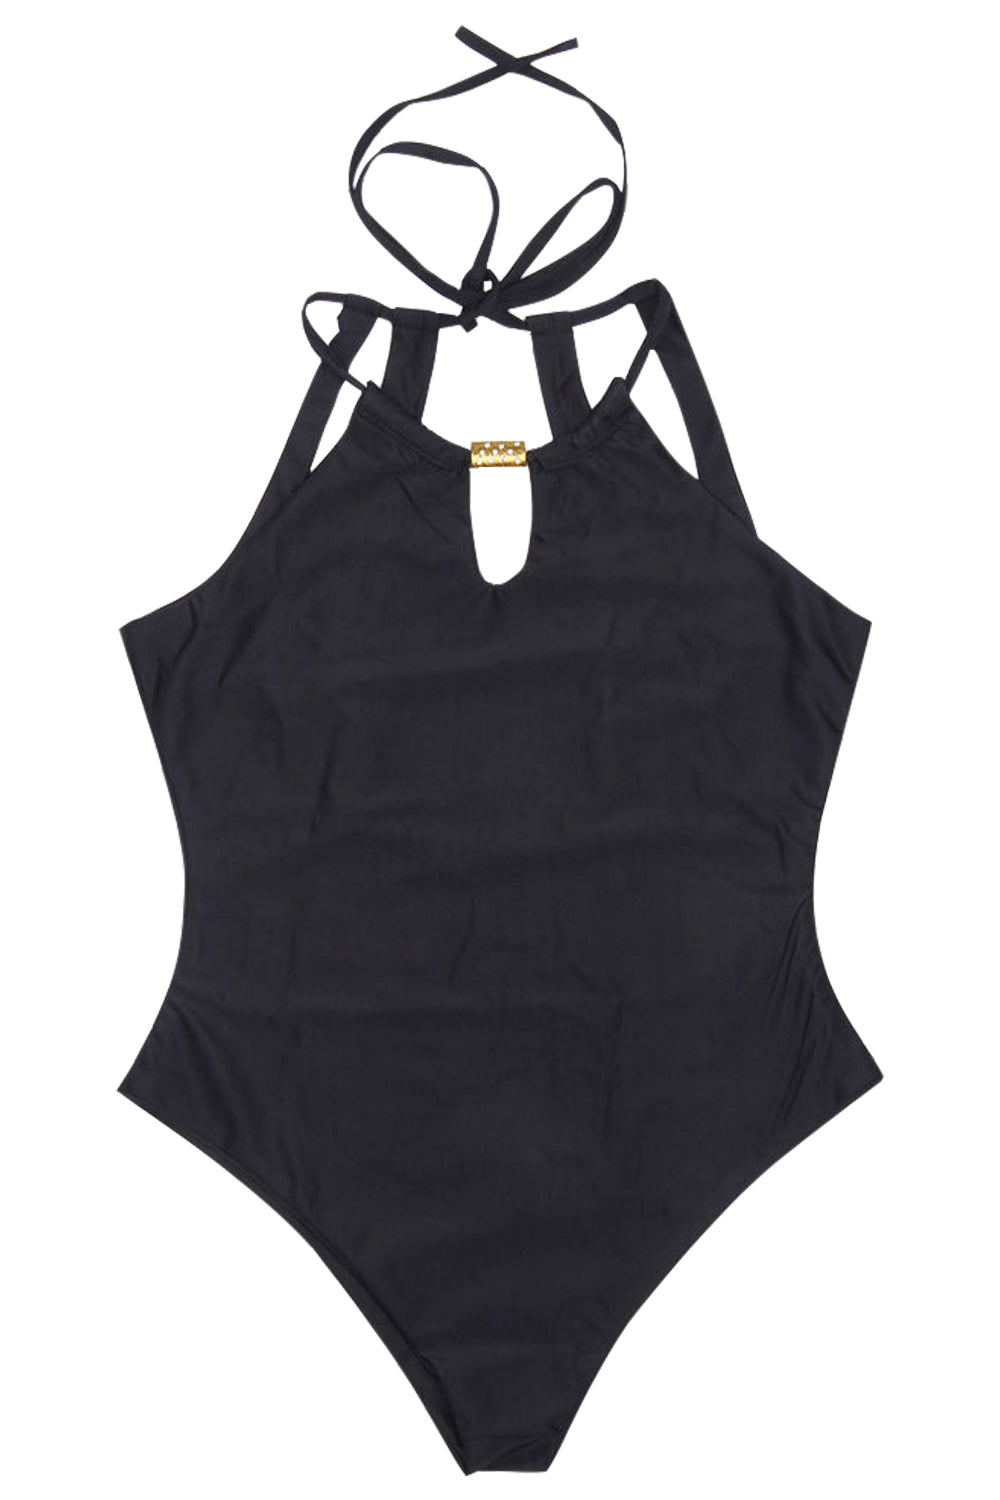 Iyasson High-neckline Halter One-piece Swimsuit